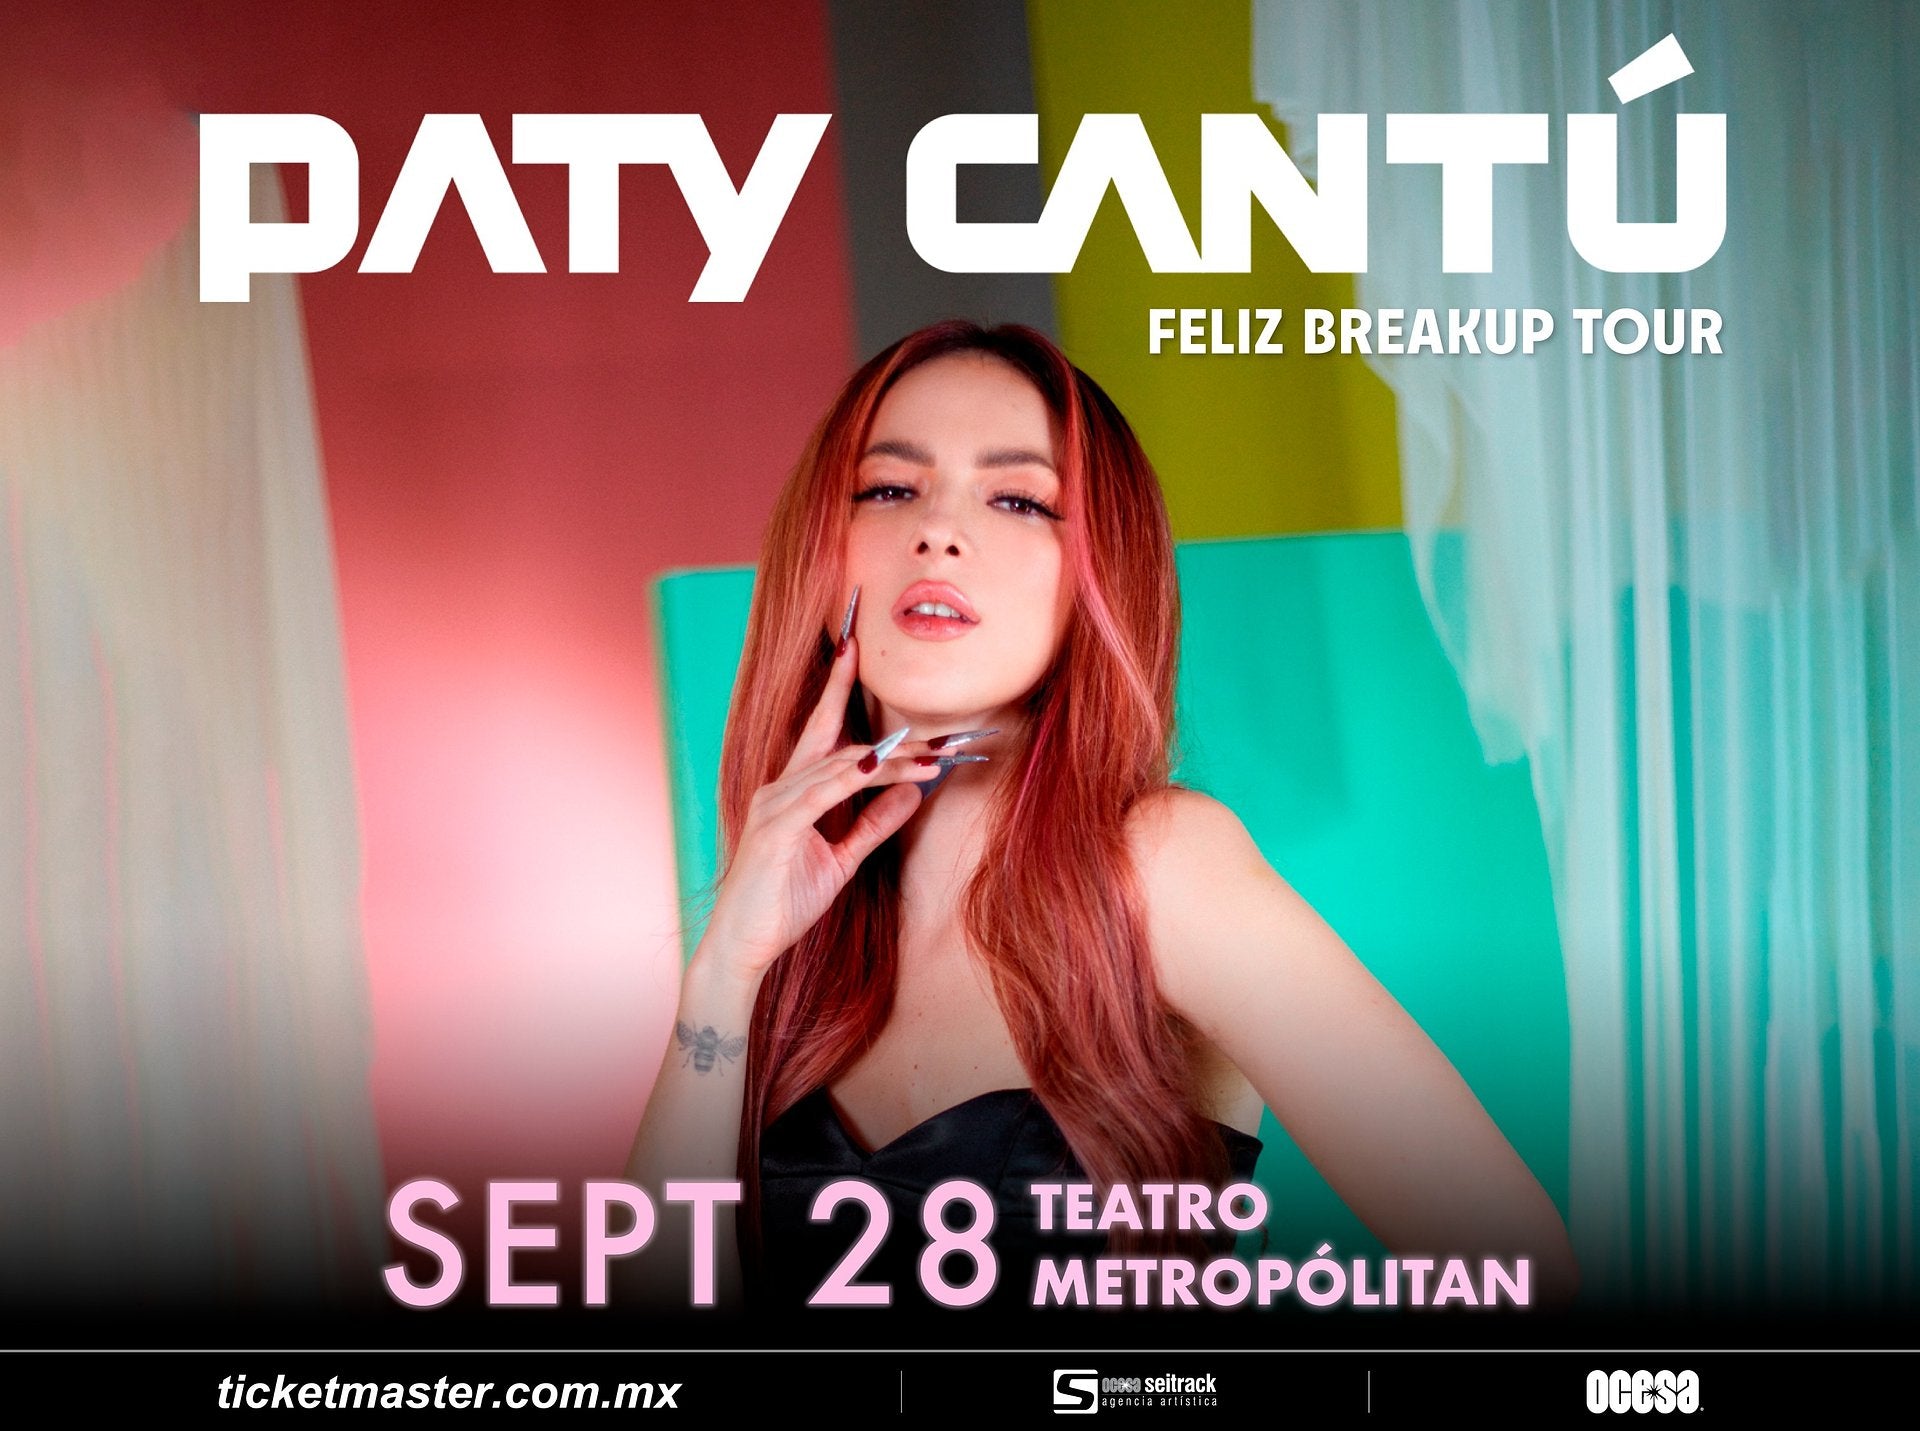 PATY CANTÚ, un mix del mejor pop mexicano, la cantante arranca con su gira FELIZ BREAKUP TOUR